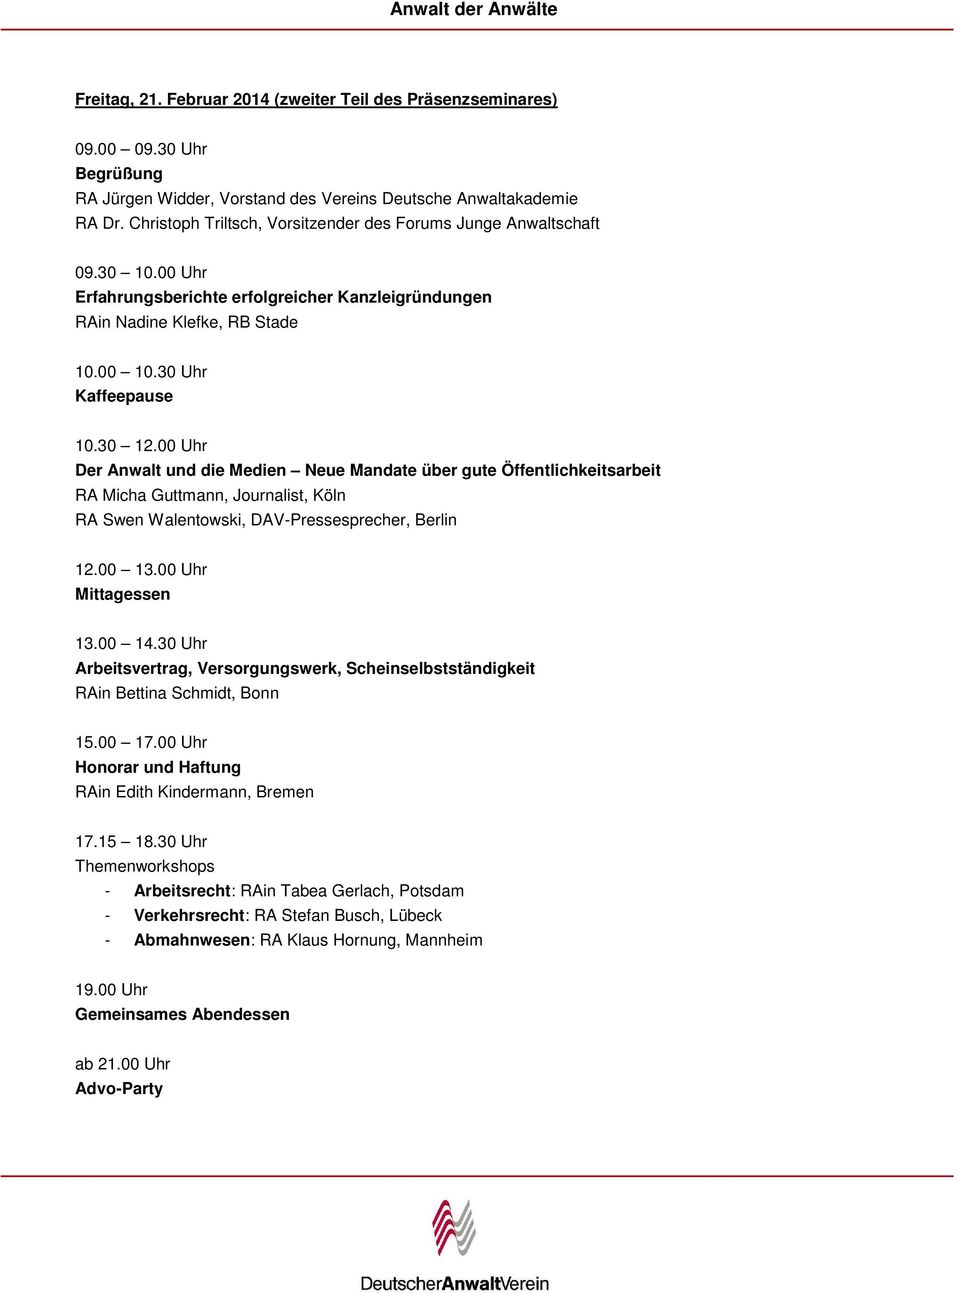 00 Uhr Der Anwalt und die Medien Neue Mandate über gute Öffentlichkeitsarbeit RA Micha Guttmann, Journalist, Köln RA Swen Walentowski, DAV-Pressesprecher, Berlin 12.00 13.00 Uhr Mittagessen 13.00 14.